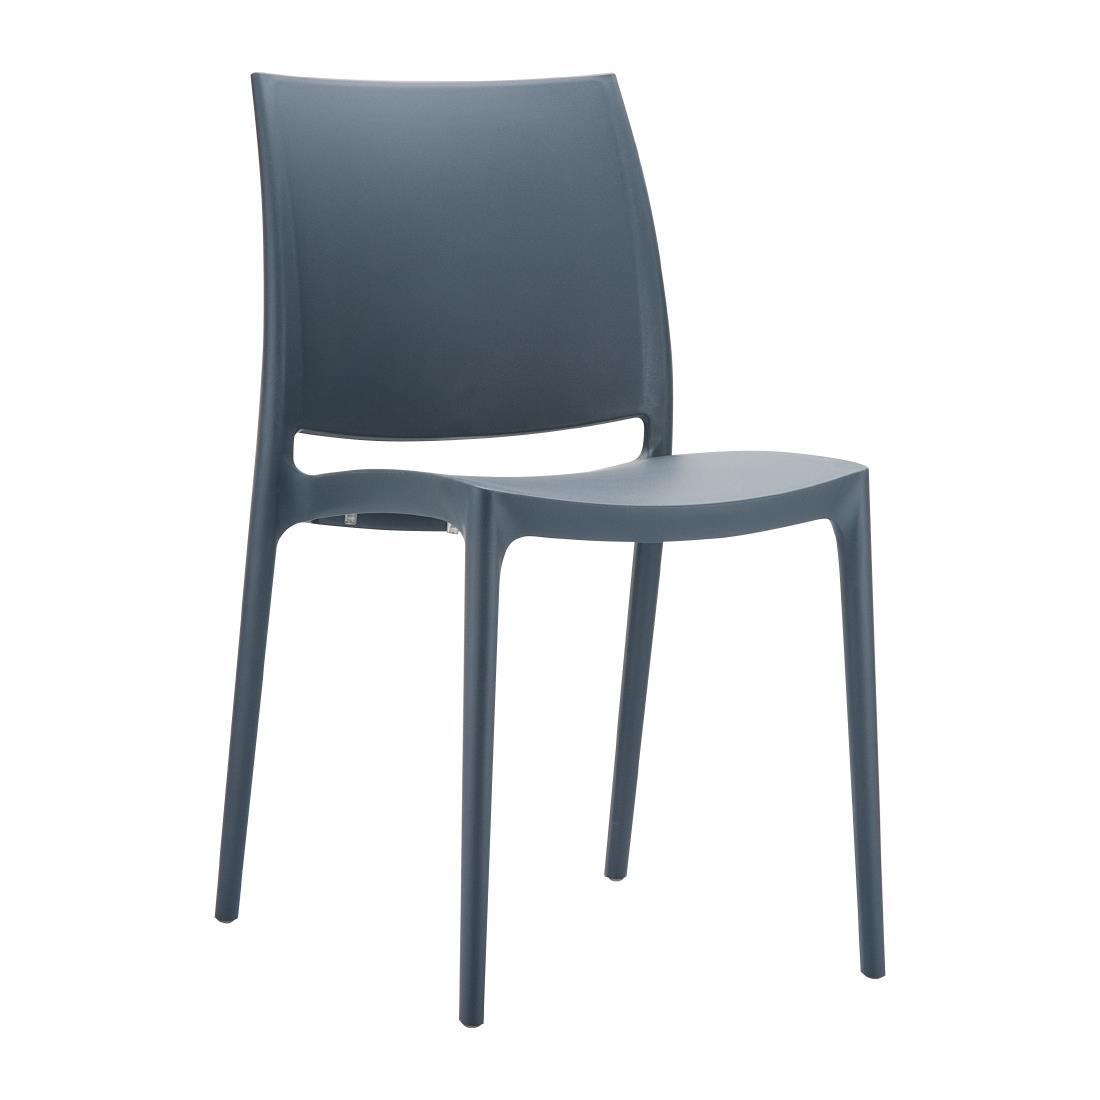 Maya Side Chair Dark Grey - FS555  - 1